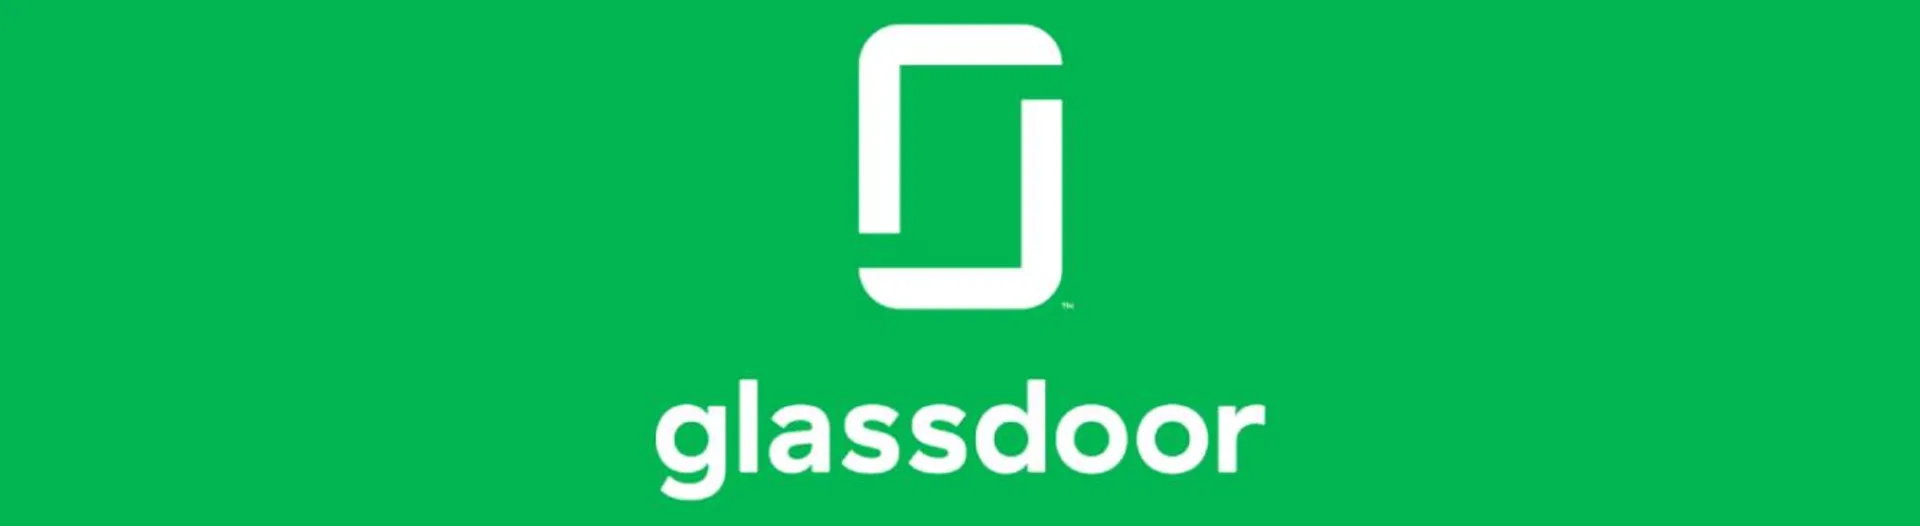 وب سایت Glassdoor